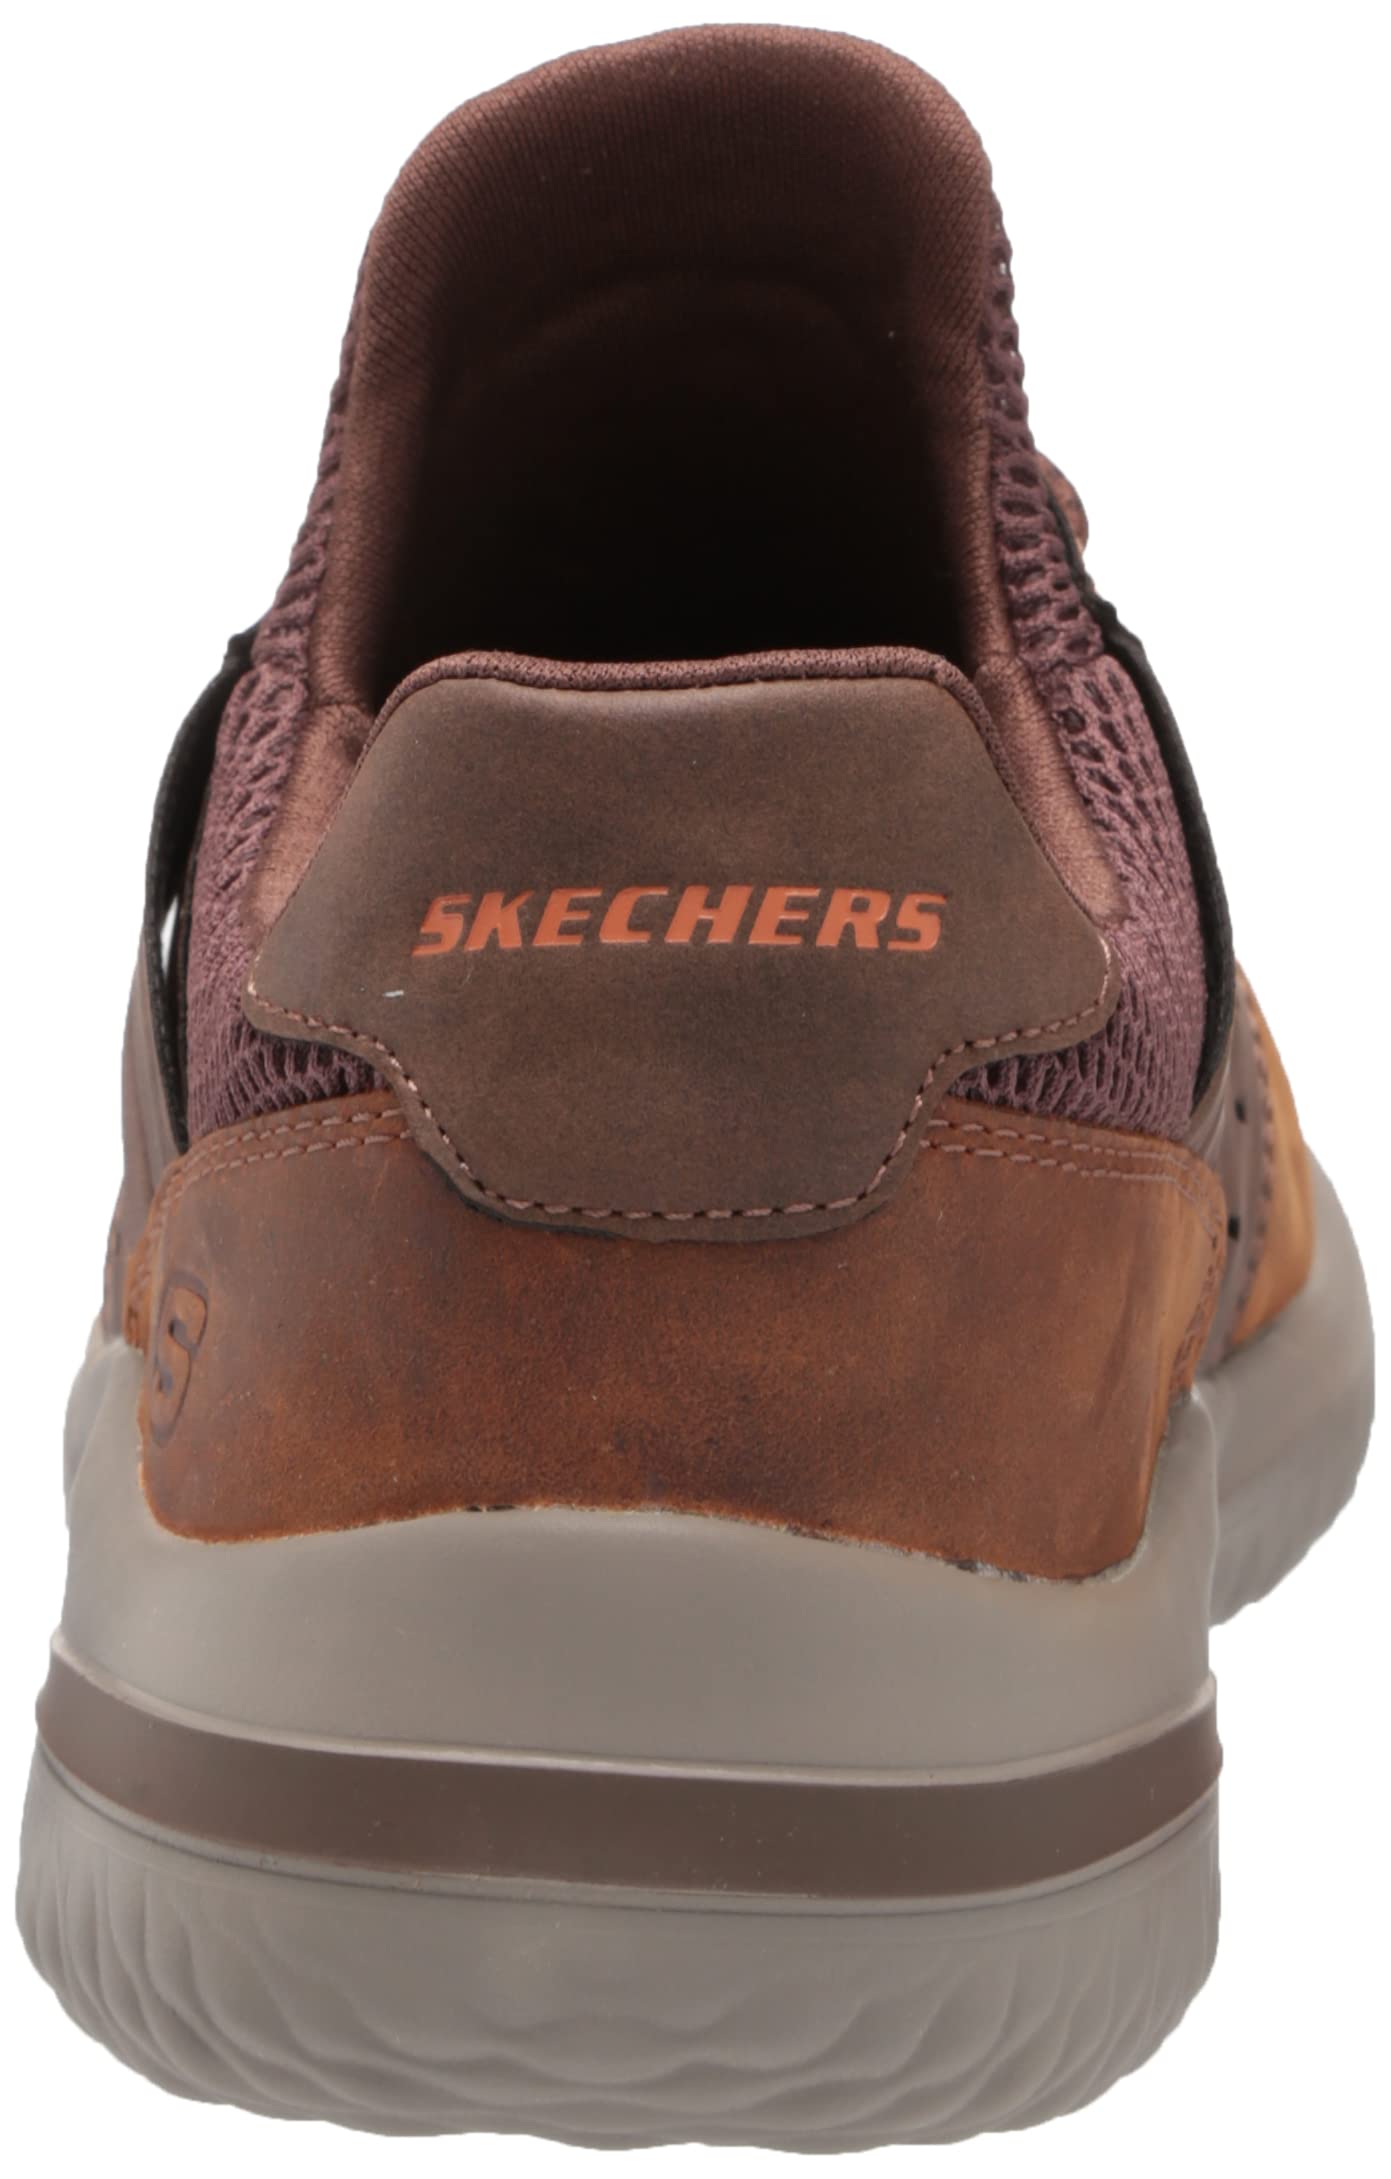 Skechers Men's Delson 3.0-Ezra Leather Bungee Lace Slip on Sneaker